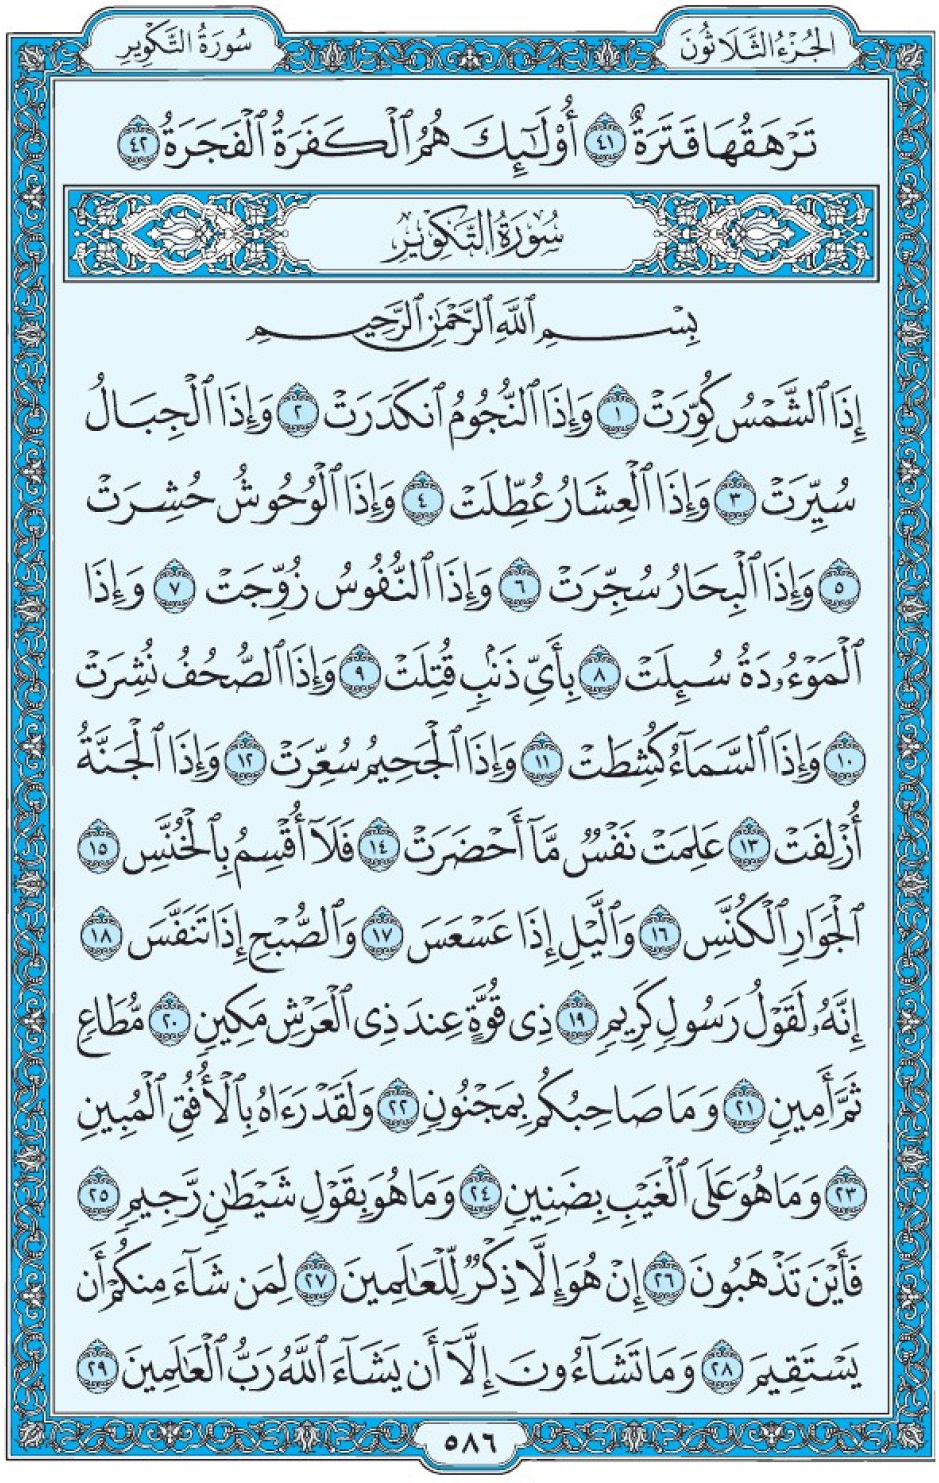 Коран Мединский мусхаф страница 586 сура 81 ат-Такуир